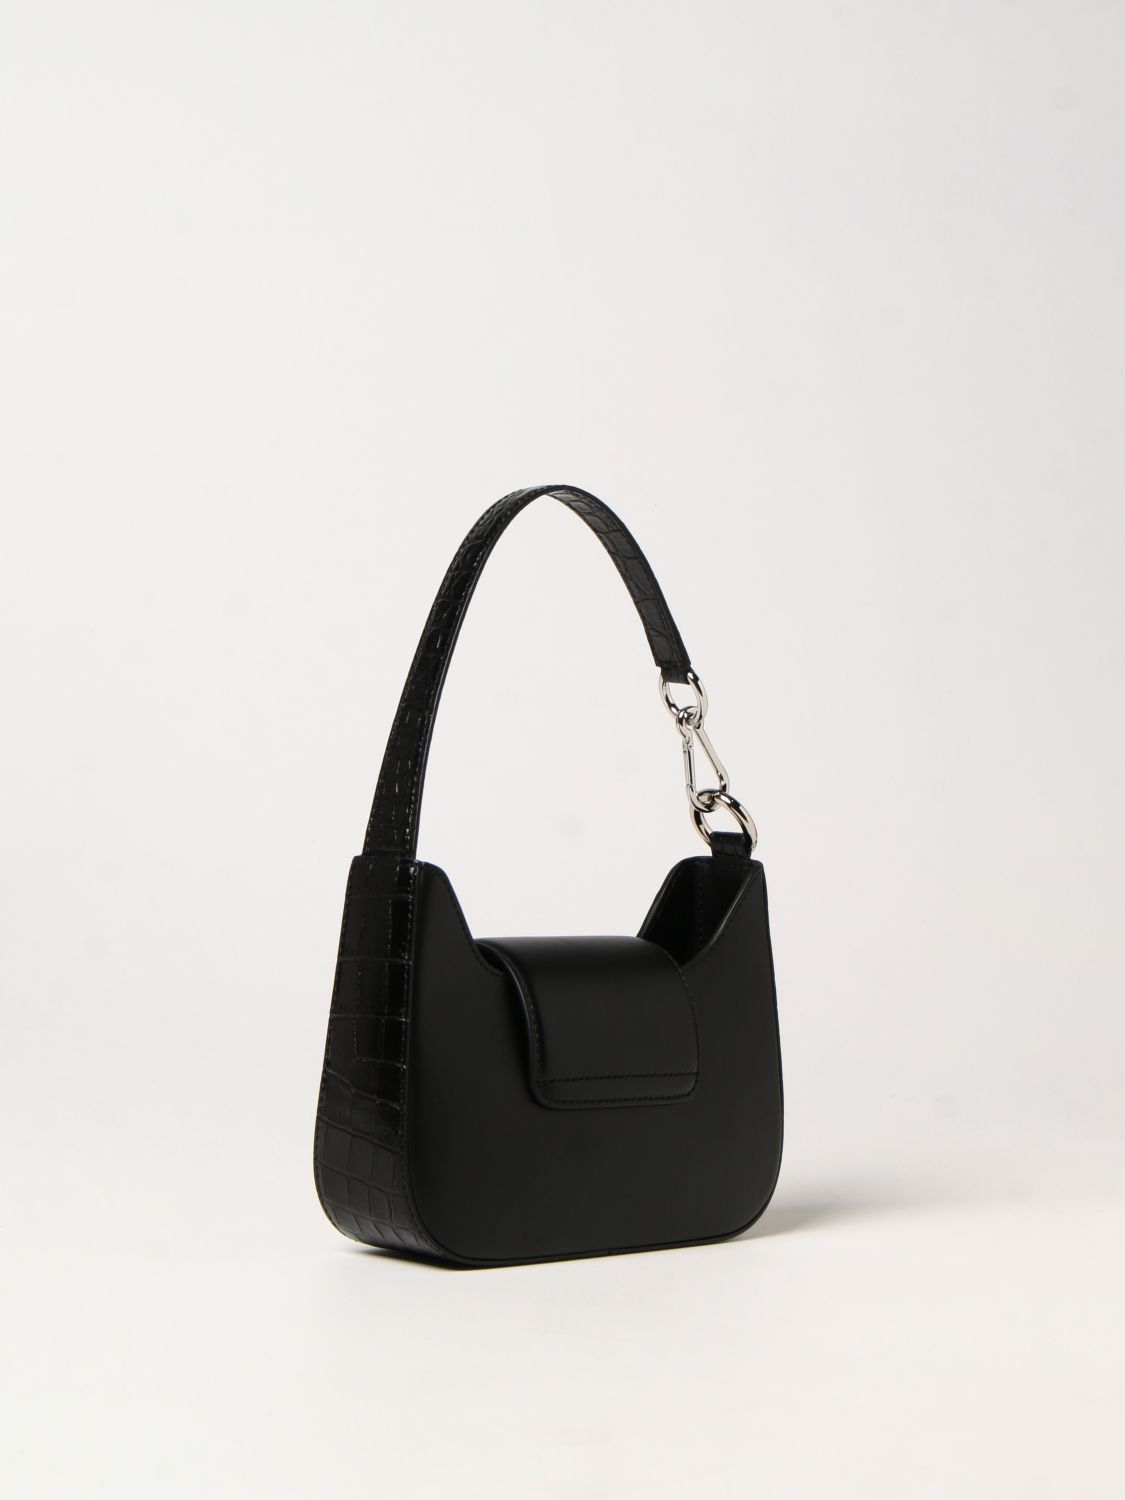 LANCEL: Sixtine bag in brushed leather - Black | Lancel shoulder bag ...